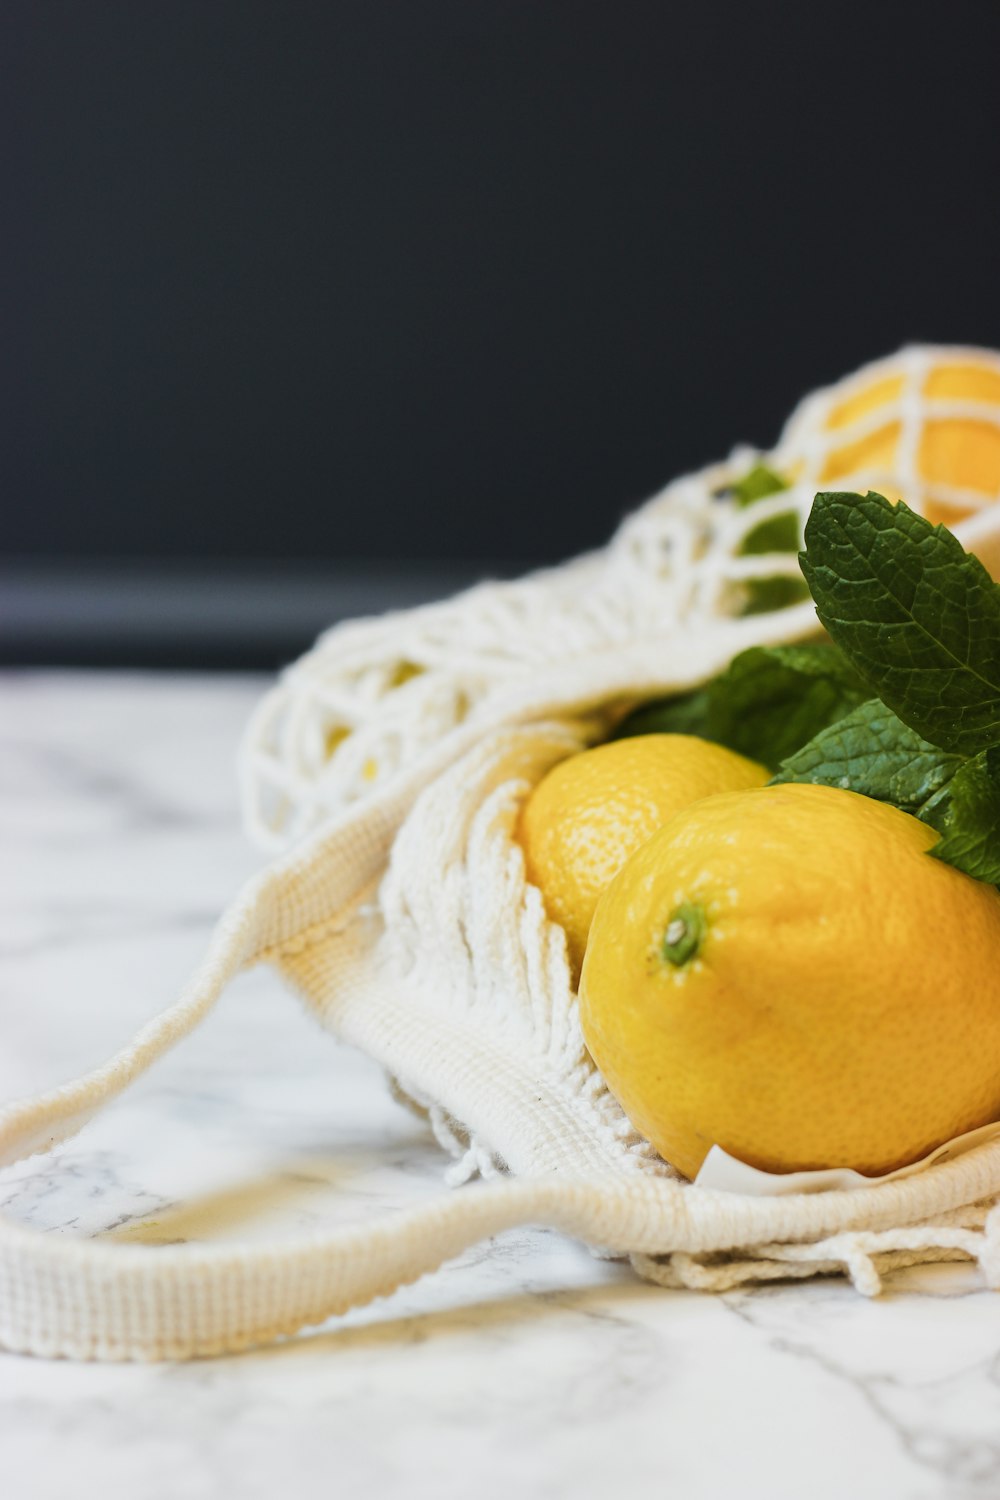 dos limones y un limón en una bolsa de tela